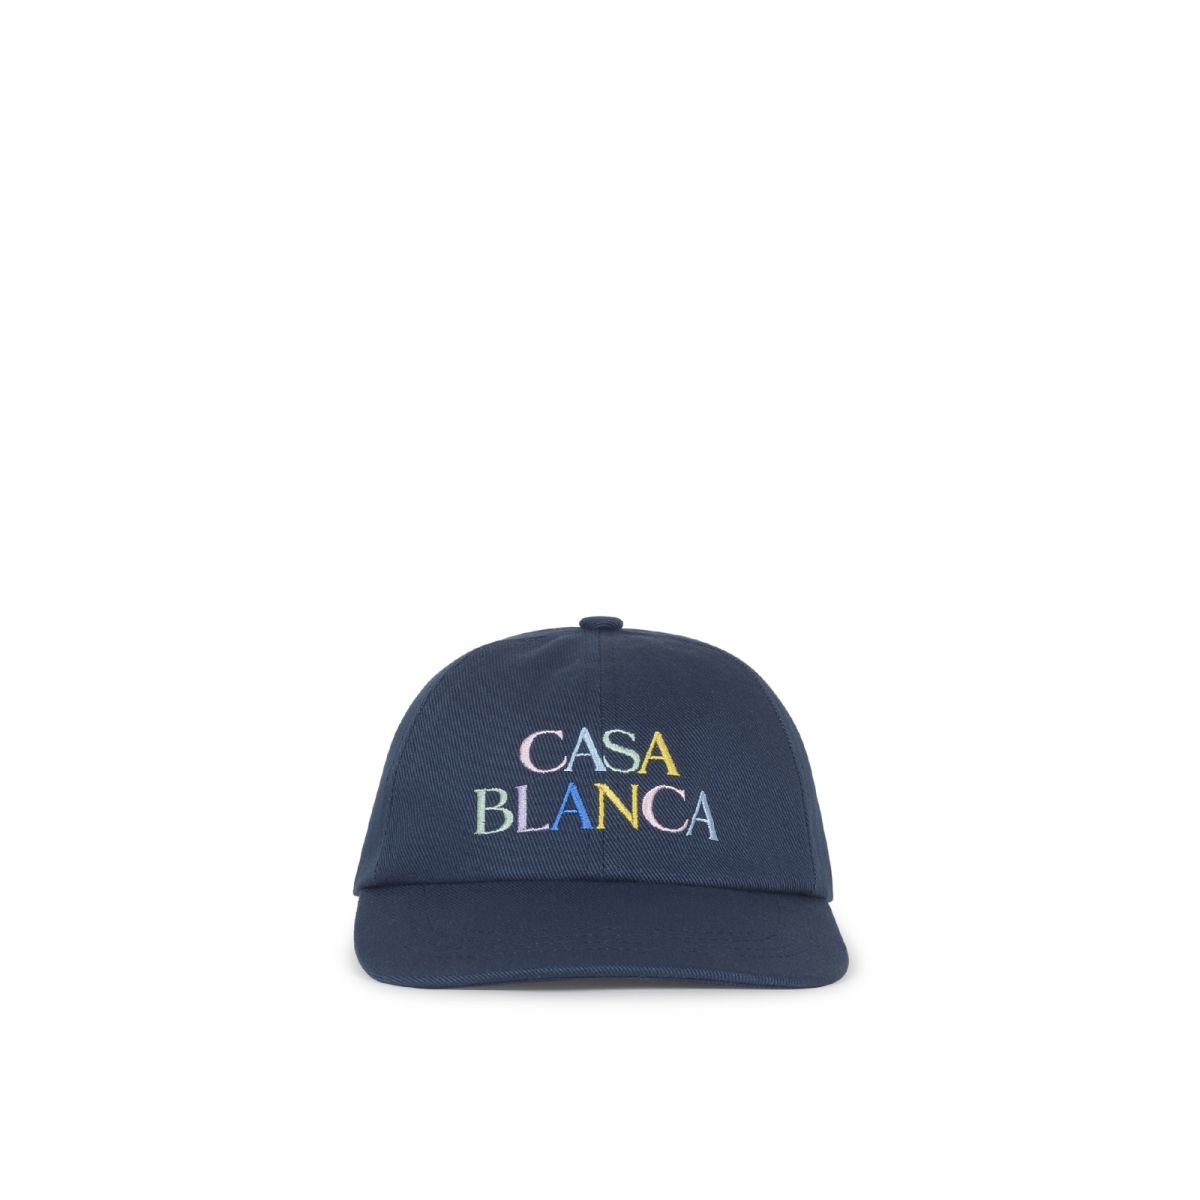 CASABLANCA - Embroidered-logo baseball cap